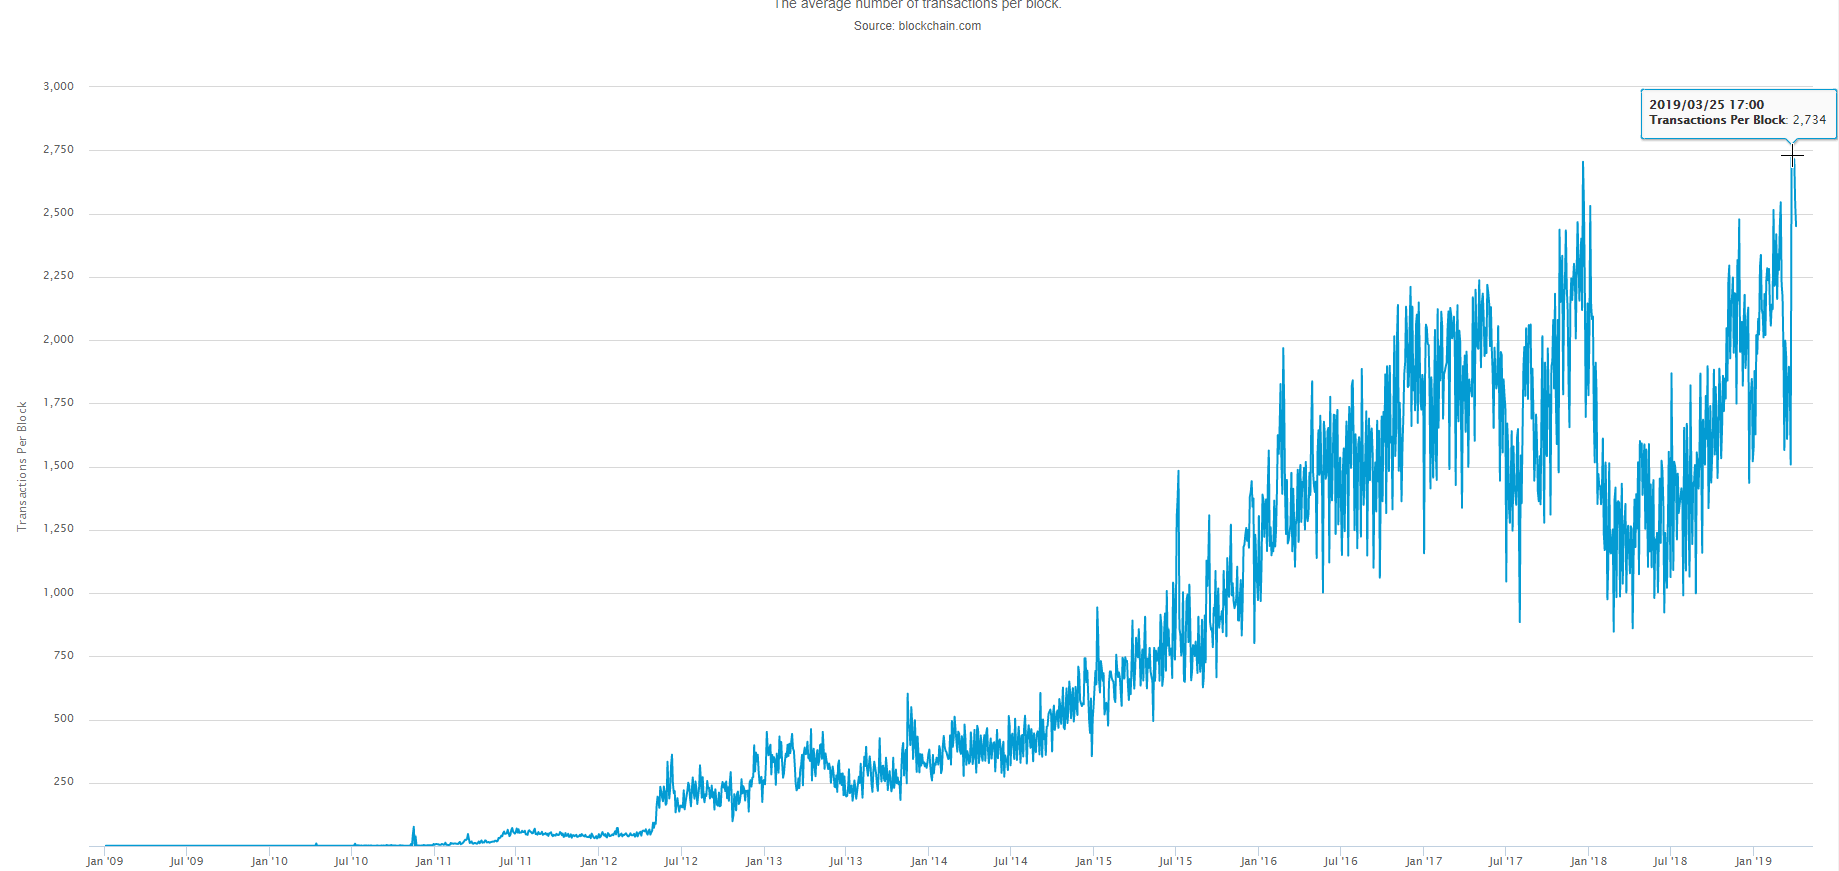 Blok başına ortalama Bitcoin işlem sayısı